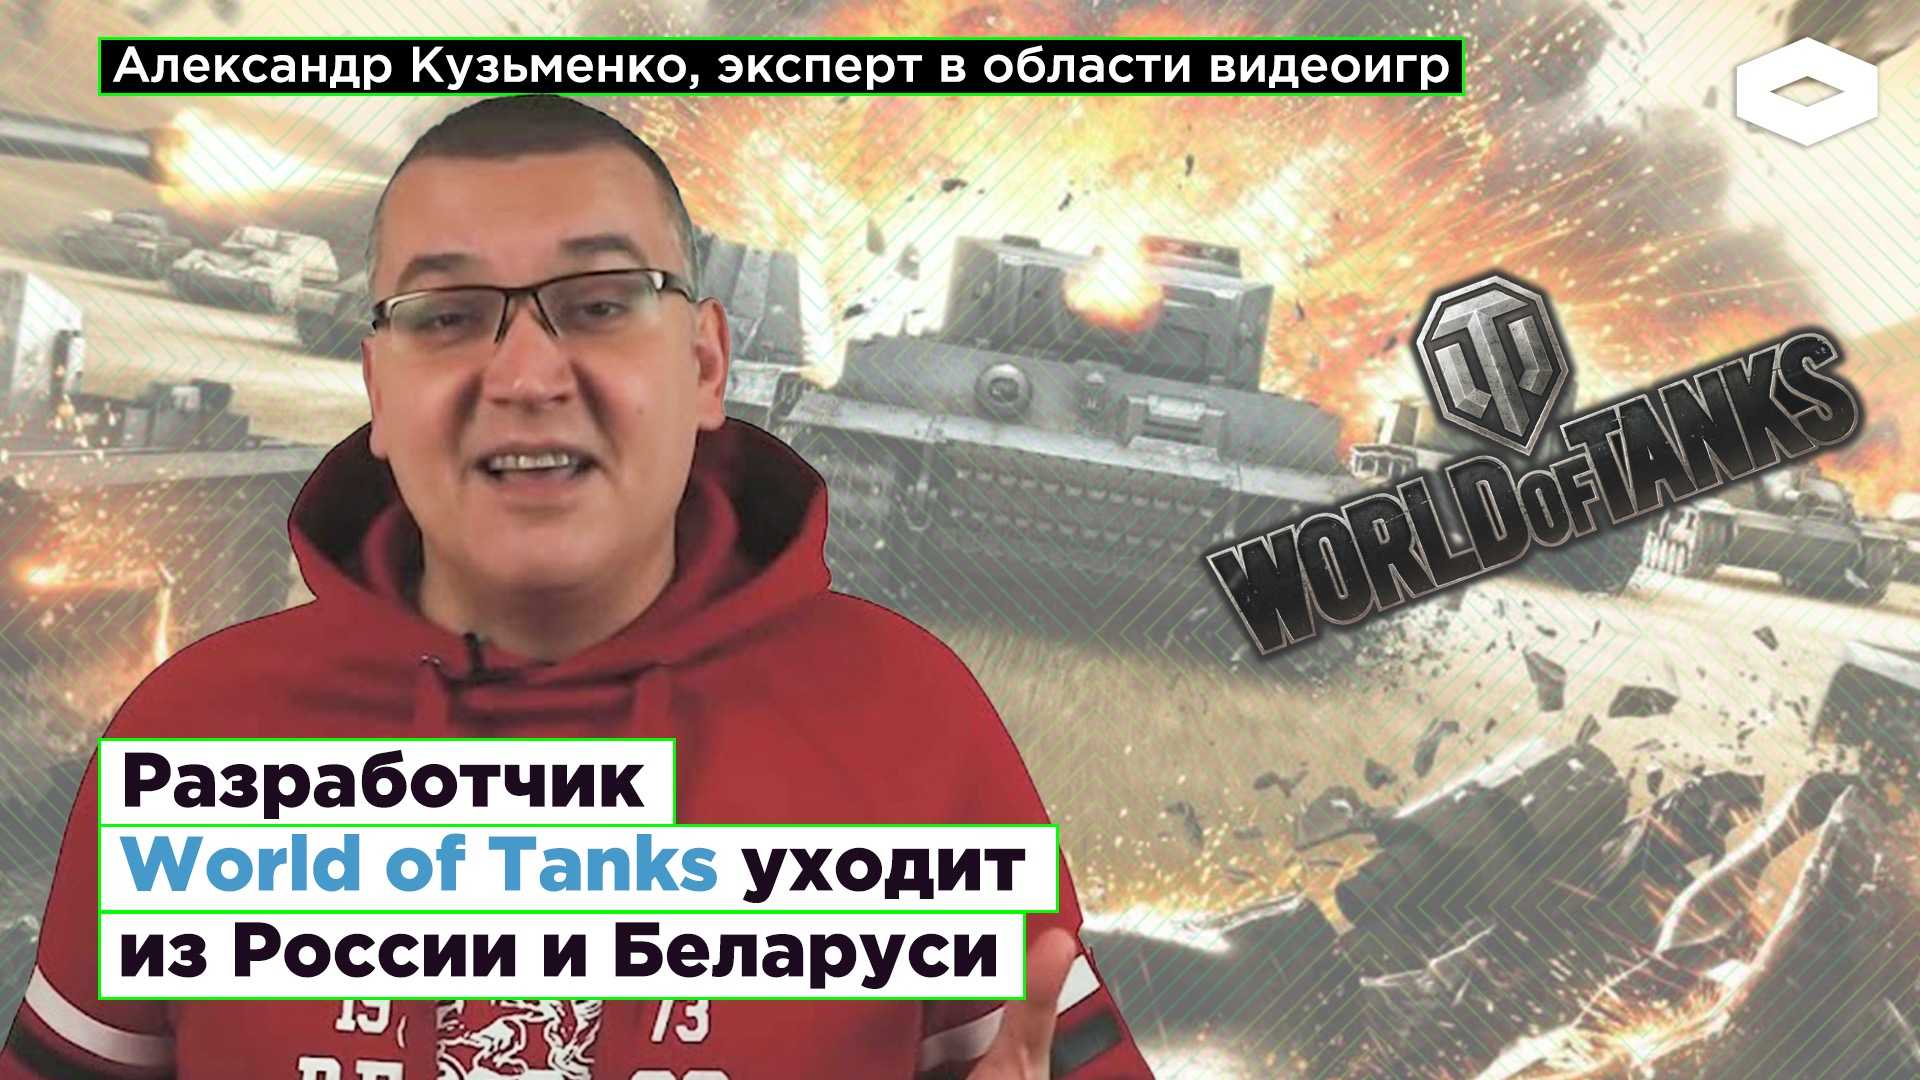 Въехали на танке: белорусы из wargaming покорили мир своей world of tanks — секрет фирмы